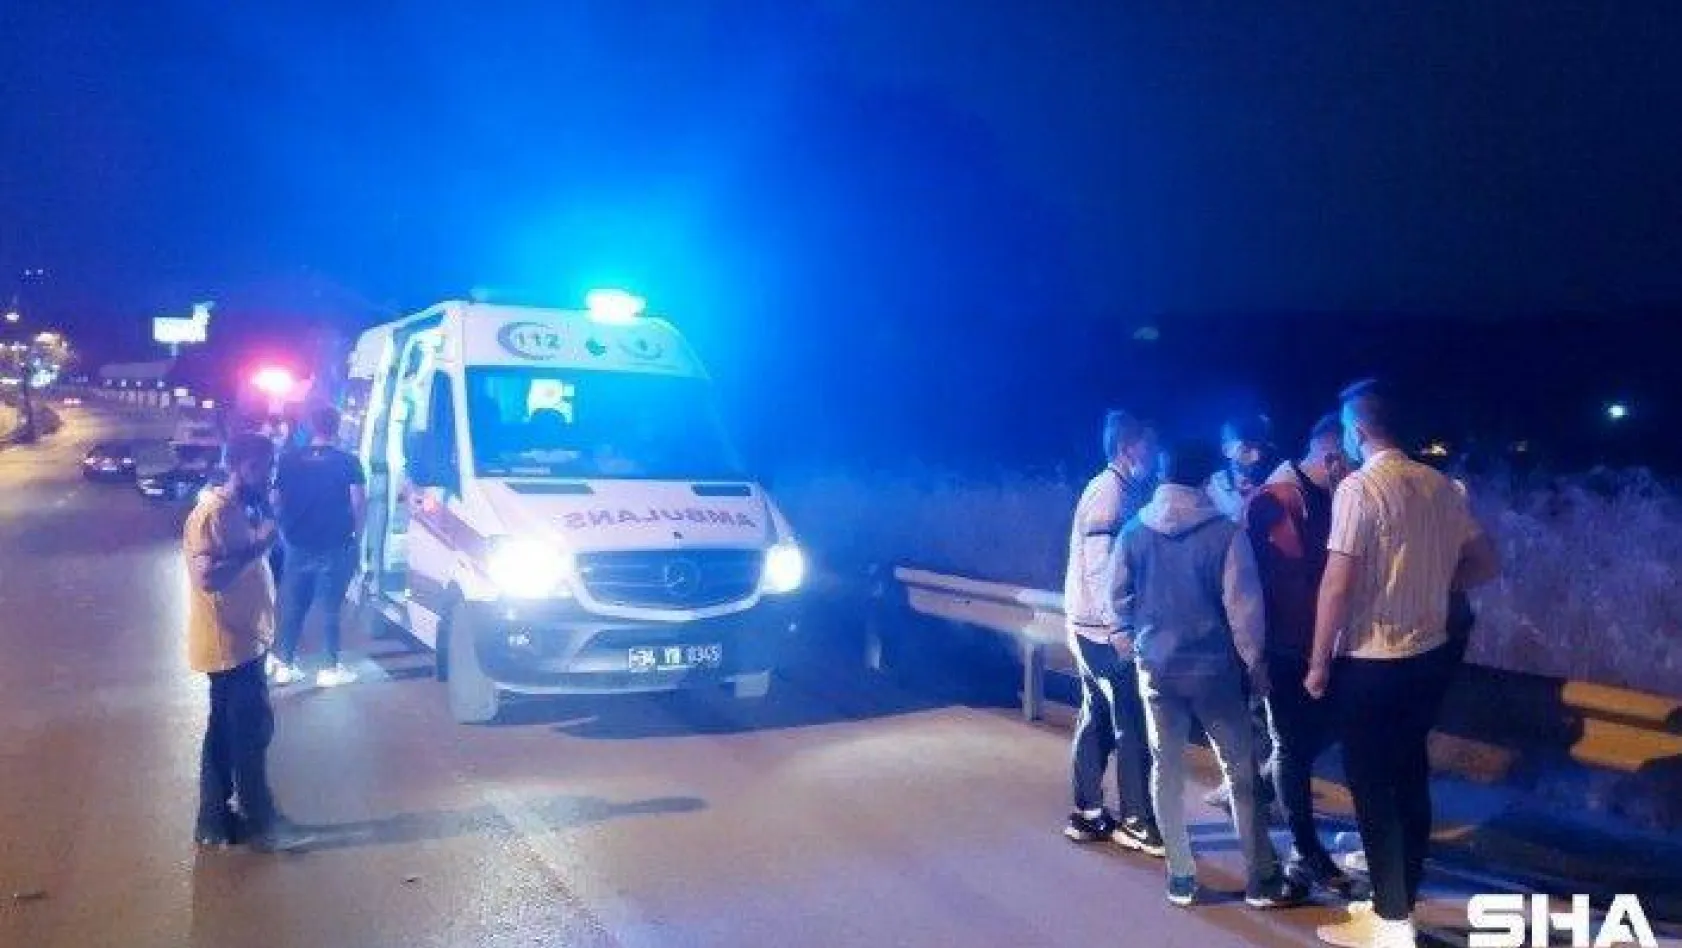 (ÖZEL) Ümraniye'de şampiyonluk kutlamaları kaza ile sonuçlandı: 4 yaralı